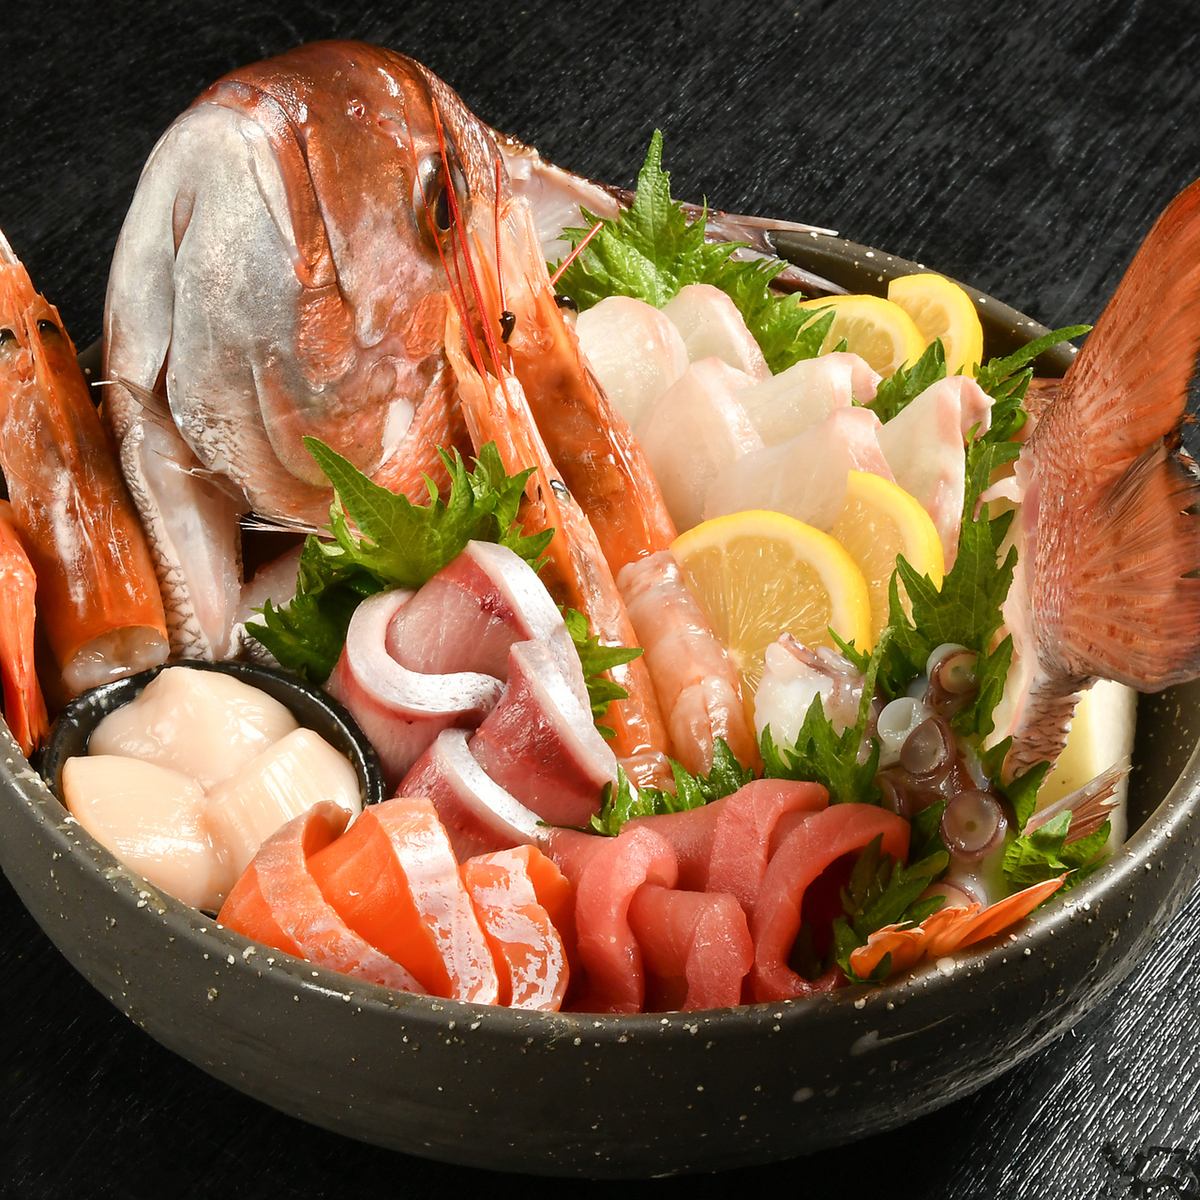 請享用每天用生魚片和寶石採購的新鮮海鮮♪